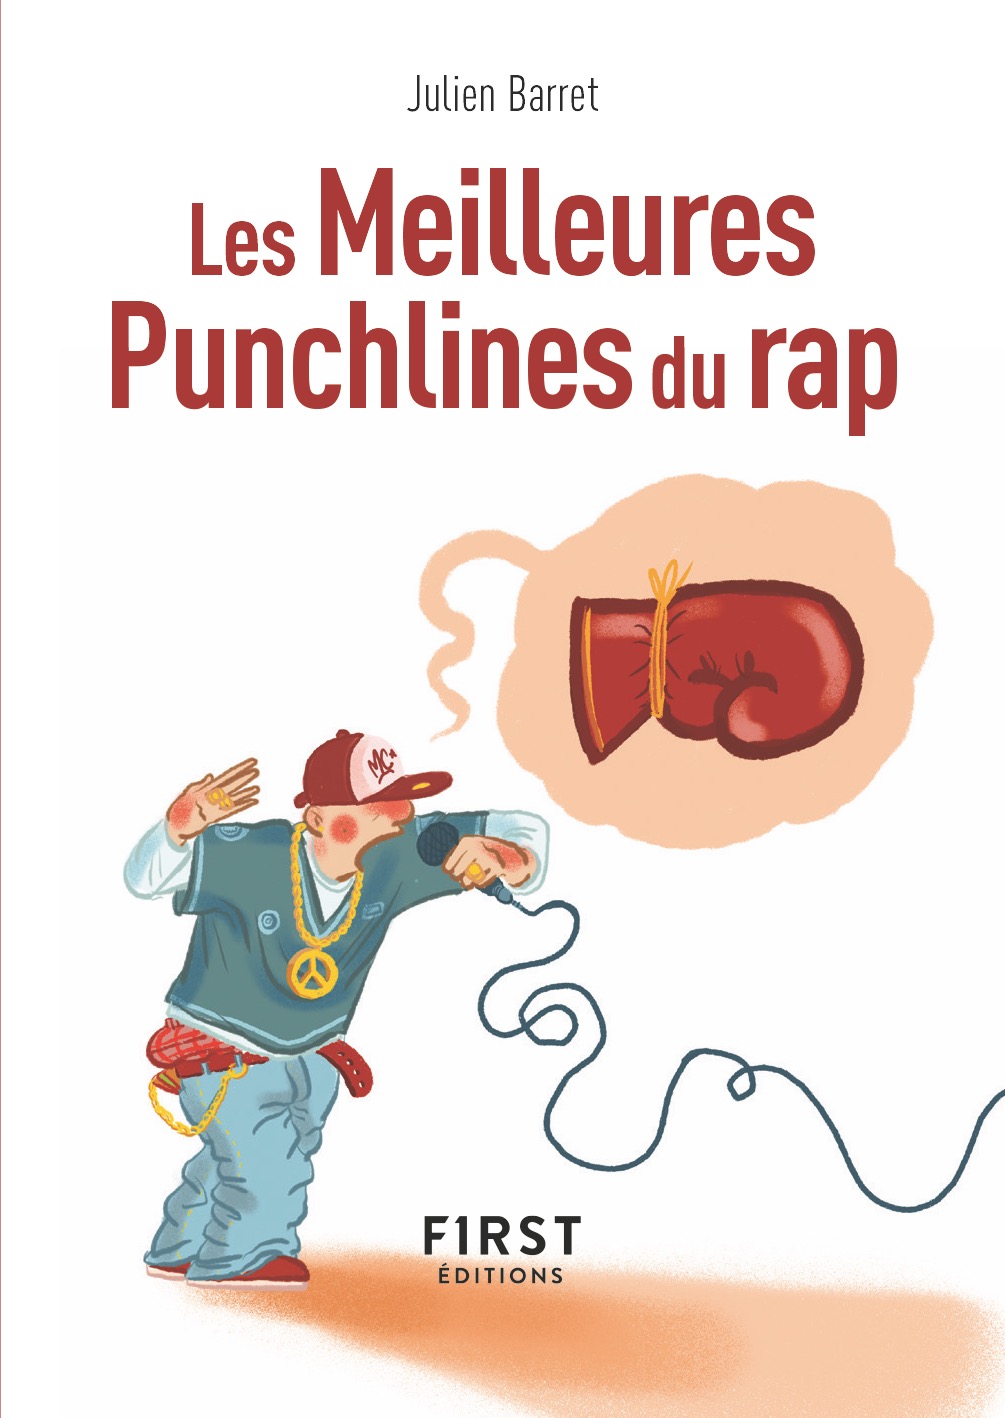 Les Meilleures Punchlines du rap-Julien Barret-First Éditions